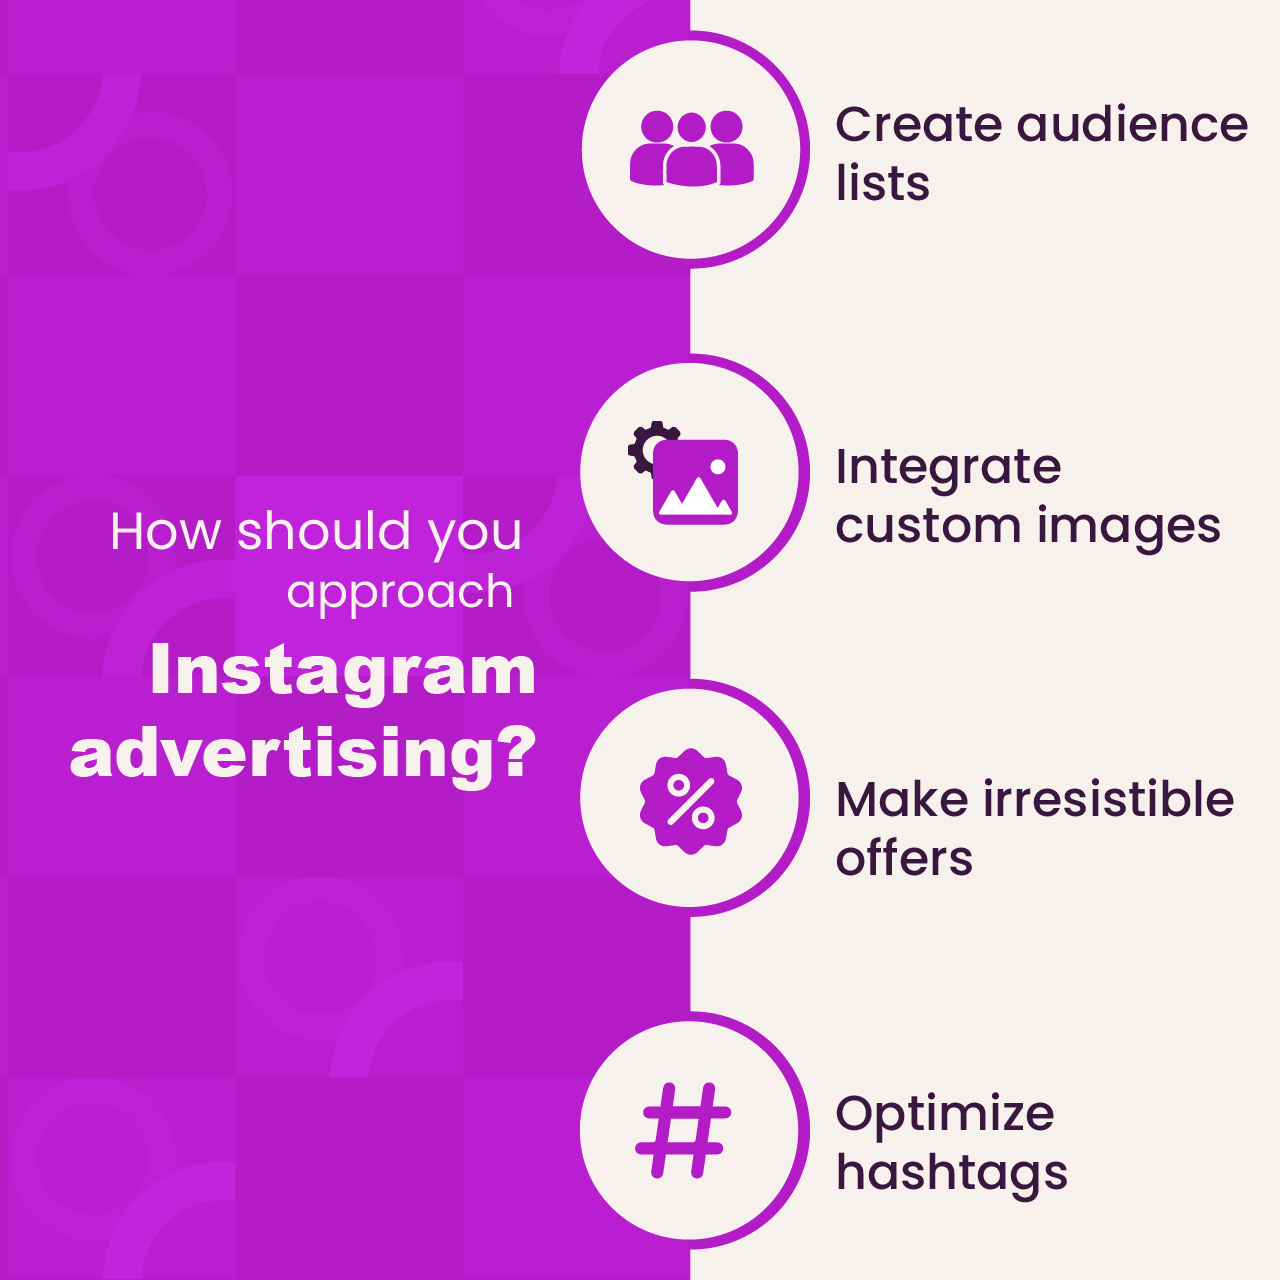 Instagram advertising best practices